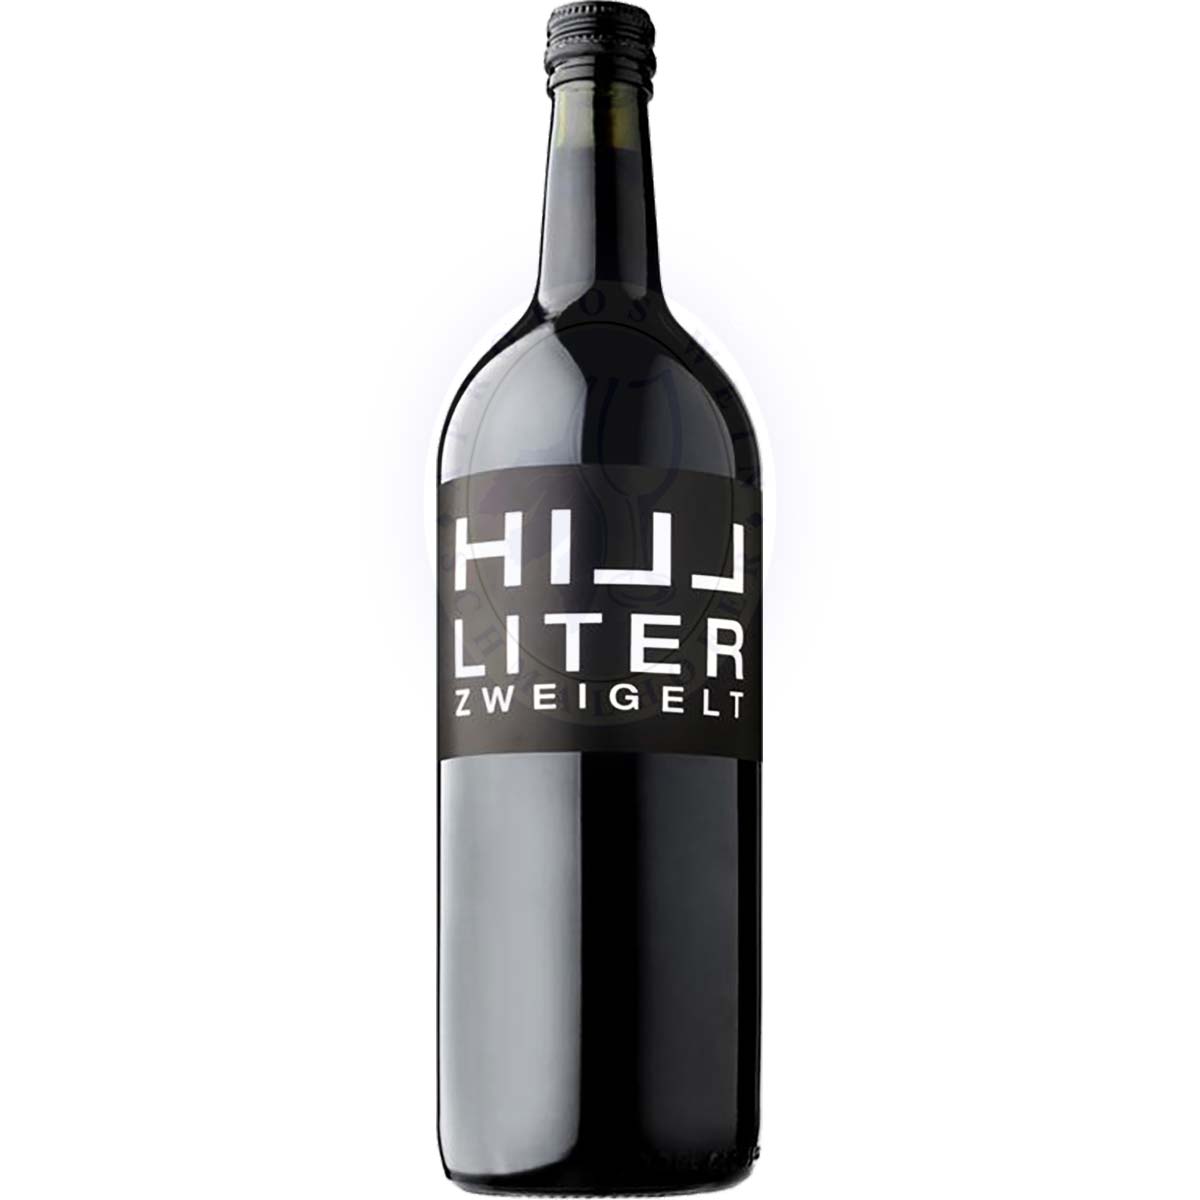 Zweigelt Liter Hillinger 1,0l günstig online kaufen – Apropos Wein GmbH